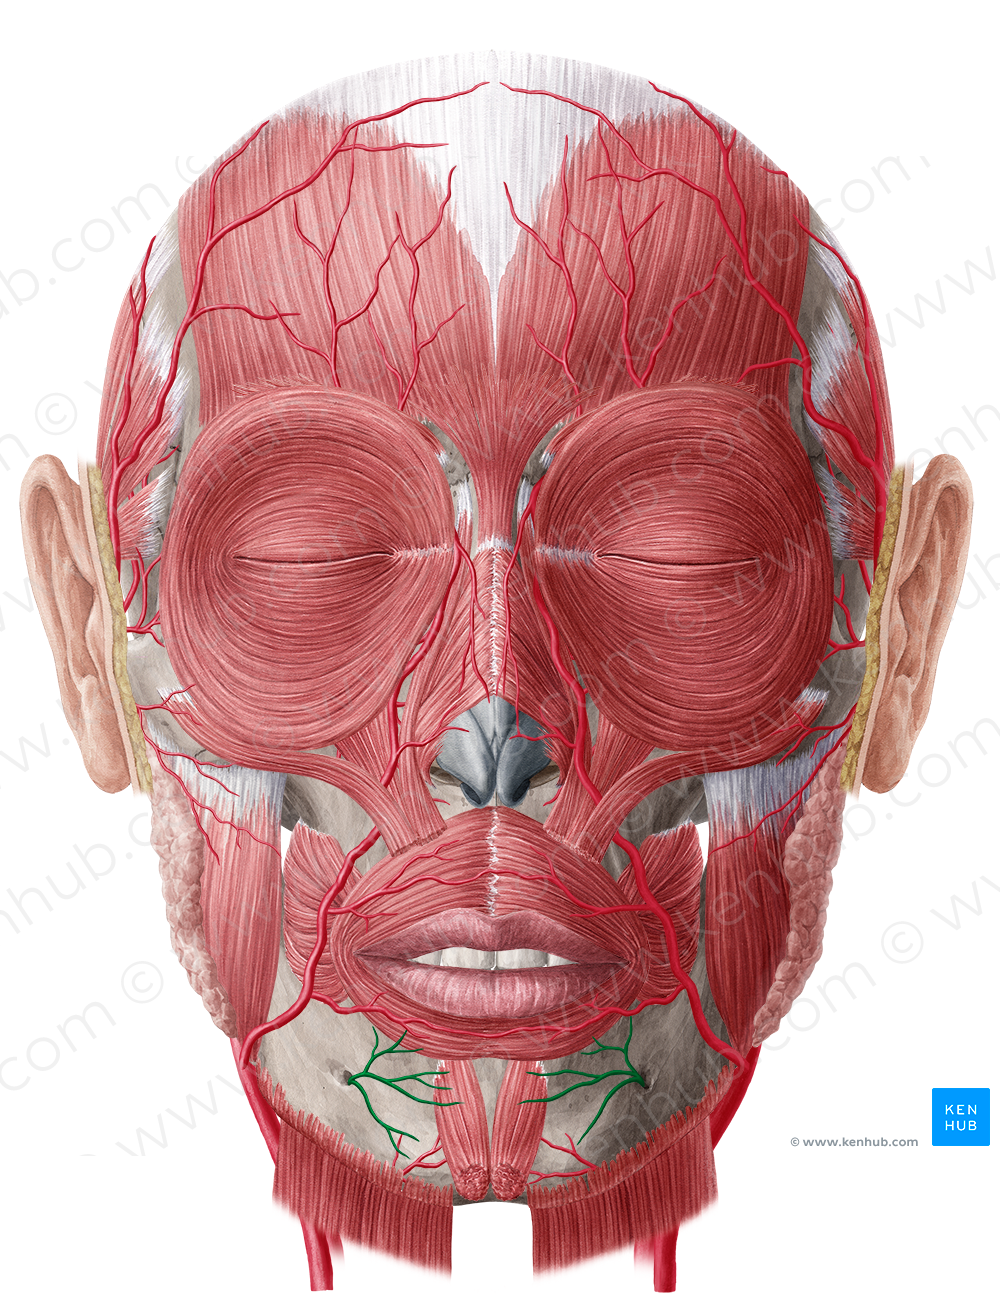 Mental branch of inferior alveolar artery (#8741)